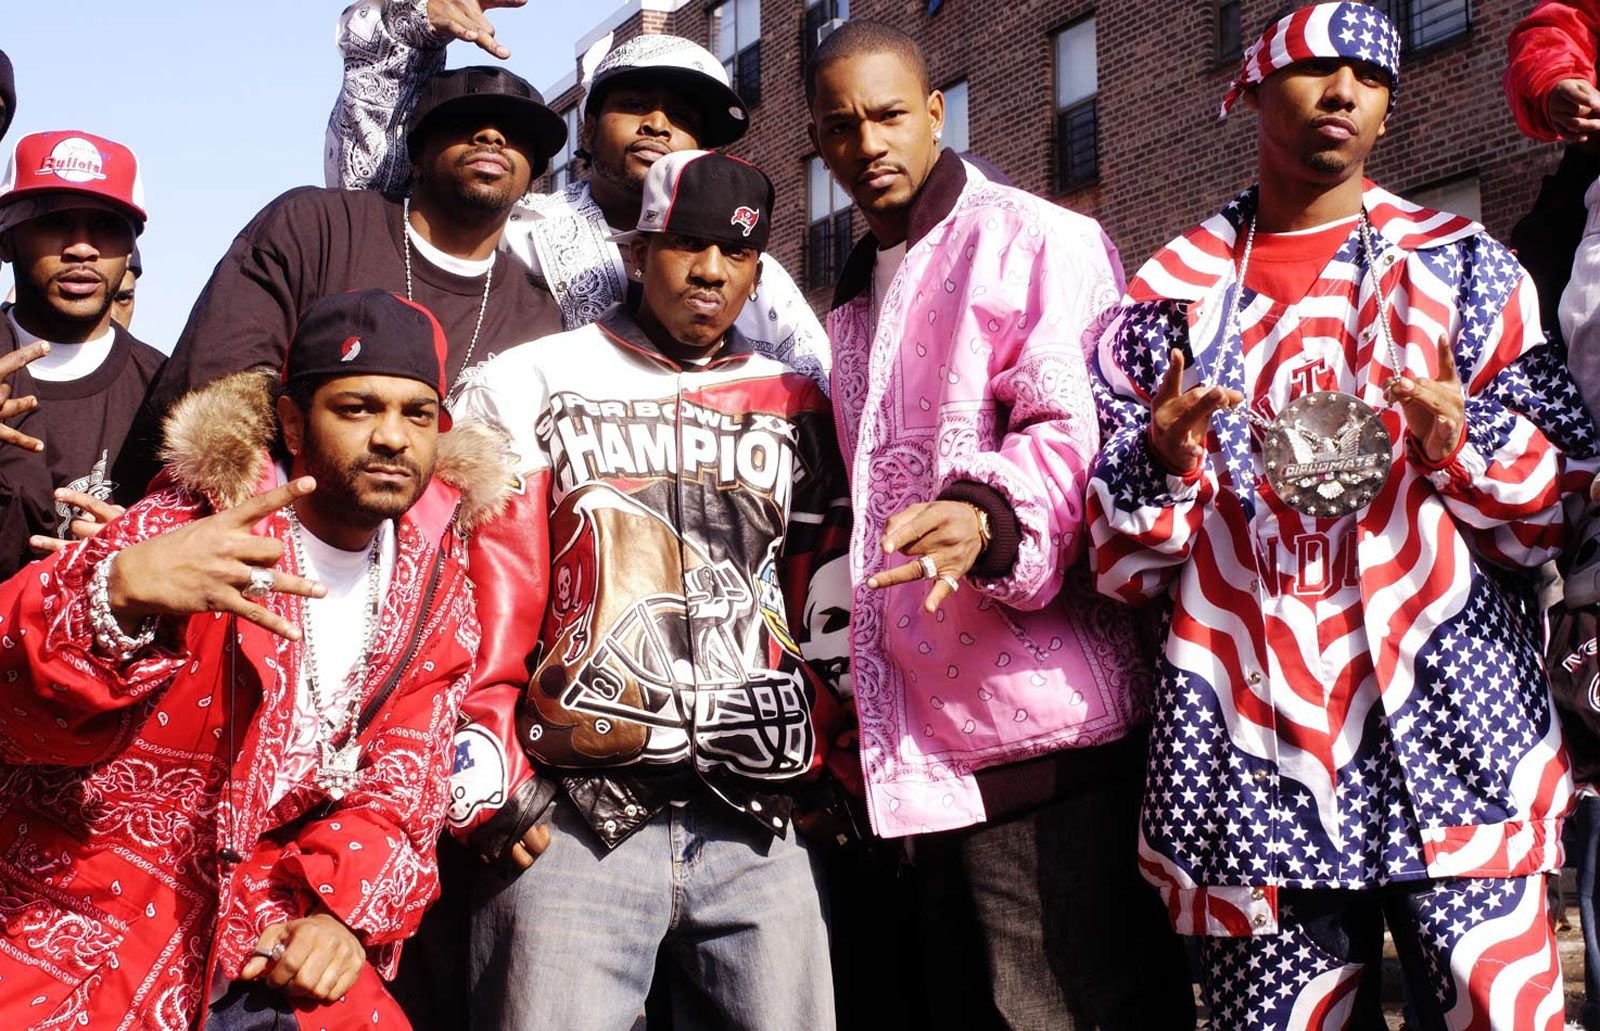 Где живут рэперы. РЭПЕРЫ субкультура 2000. Хип хоп стиль в Америке 90е. Хип хоп США 90е. Хип хоп культура одежда 2000 Америка.